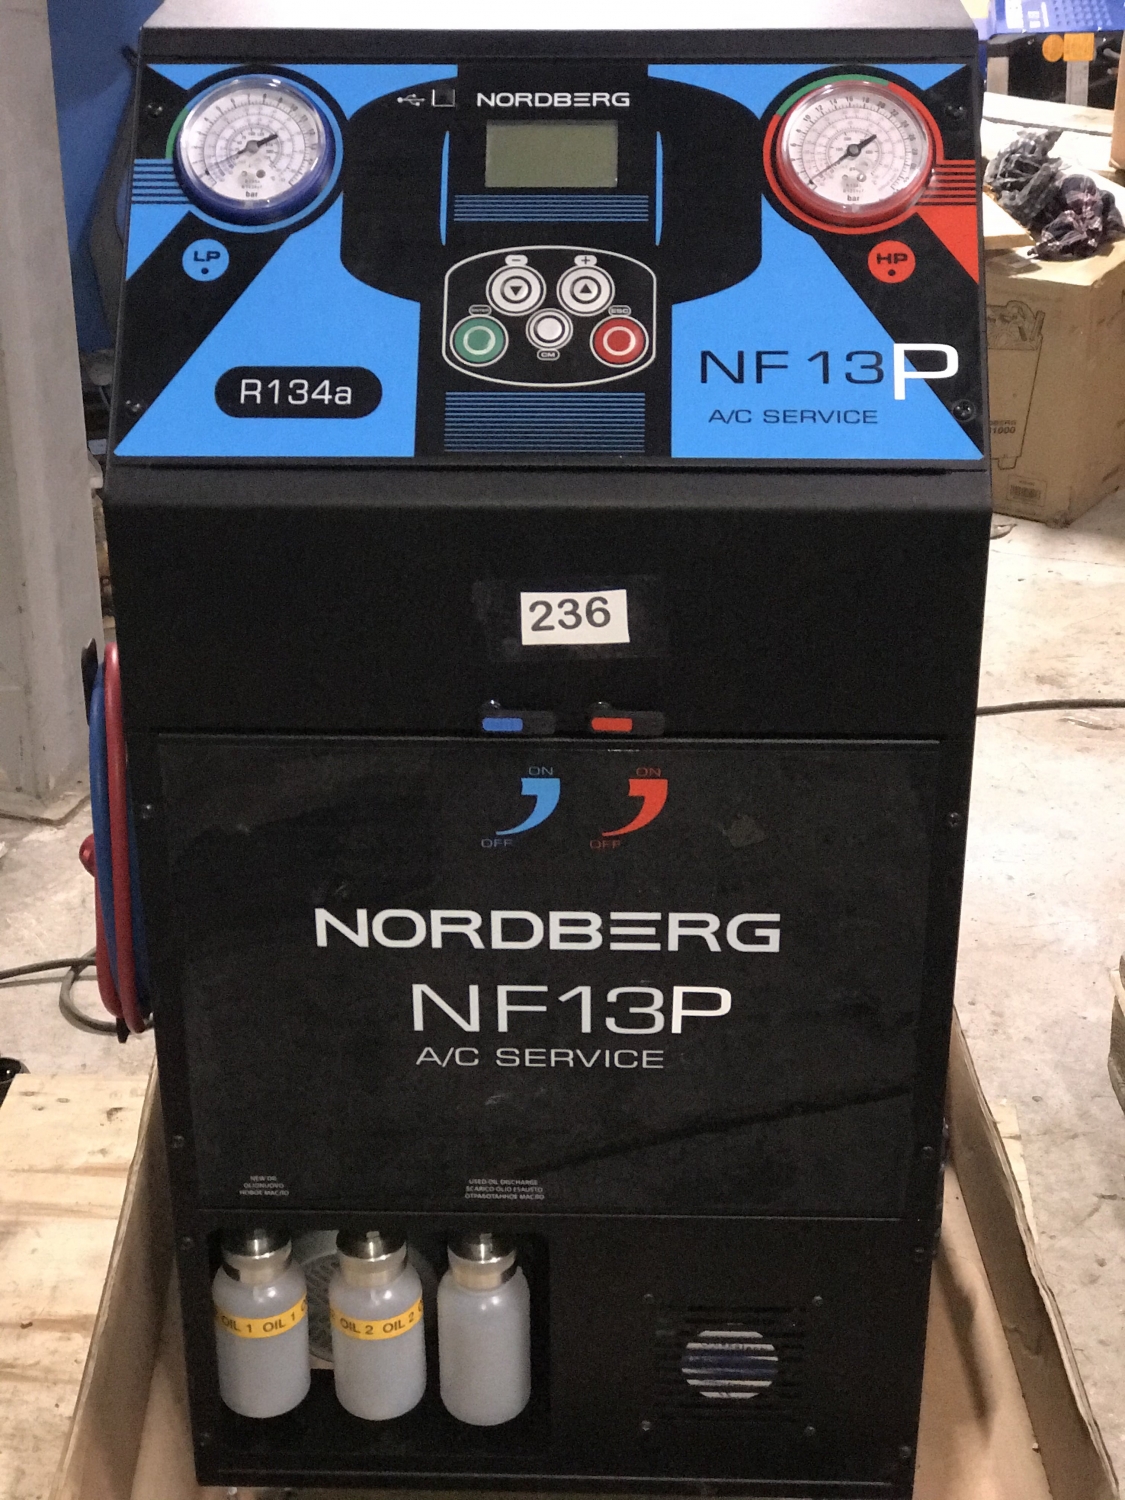 NORDBERG УСТАНОВКА NF13P автомат для заправки автомобильных кондиционеров с принтером RM 236